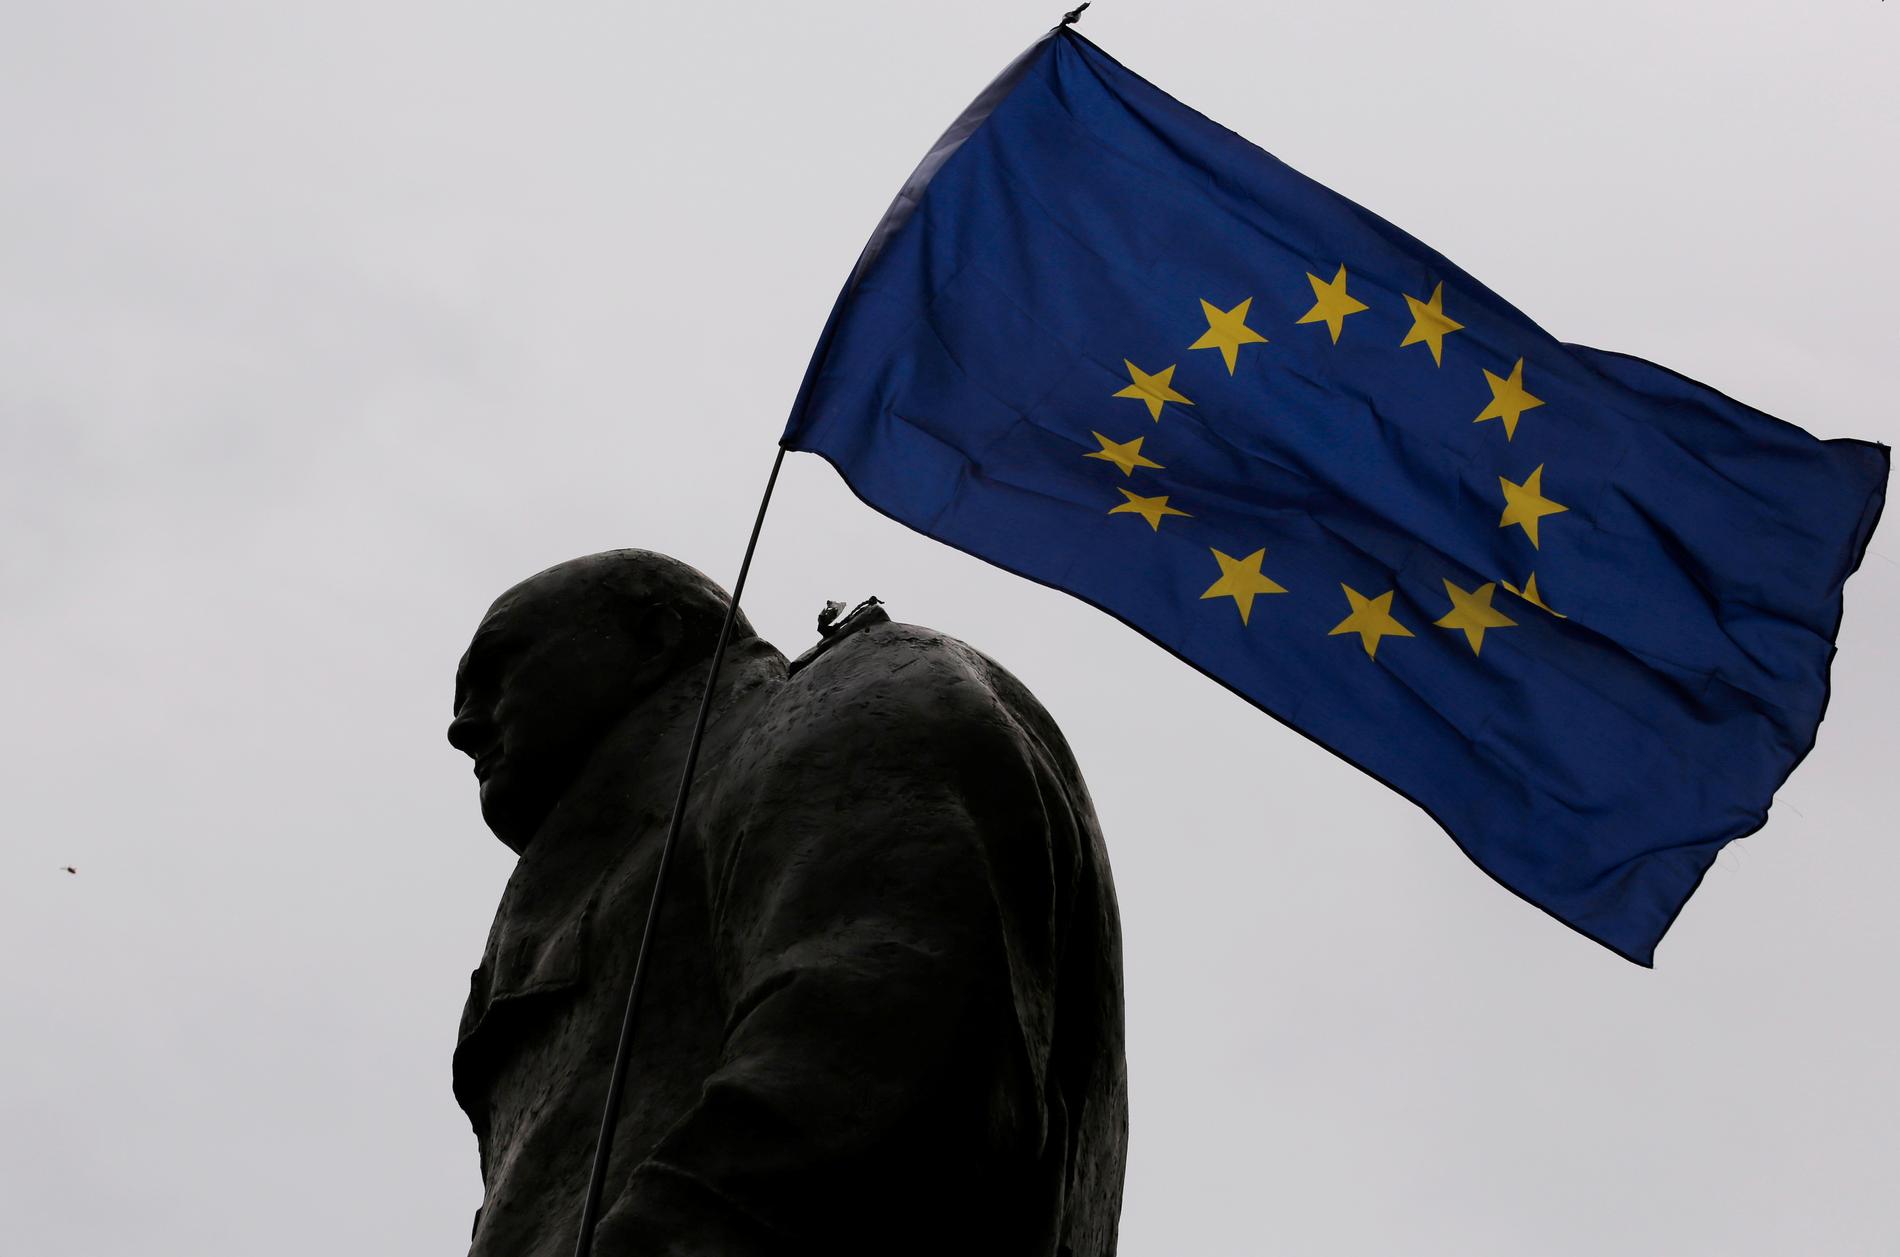 KUTTER BÅND: En avskjed til EU betyr å kutte alle bånd til det Europa vi kjenner til i dag. En avskjed til EU vil være som å skru klokken 70 år tilbake i tid, skriver Alma Botten.